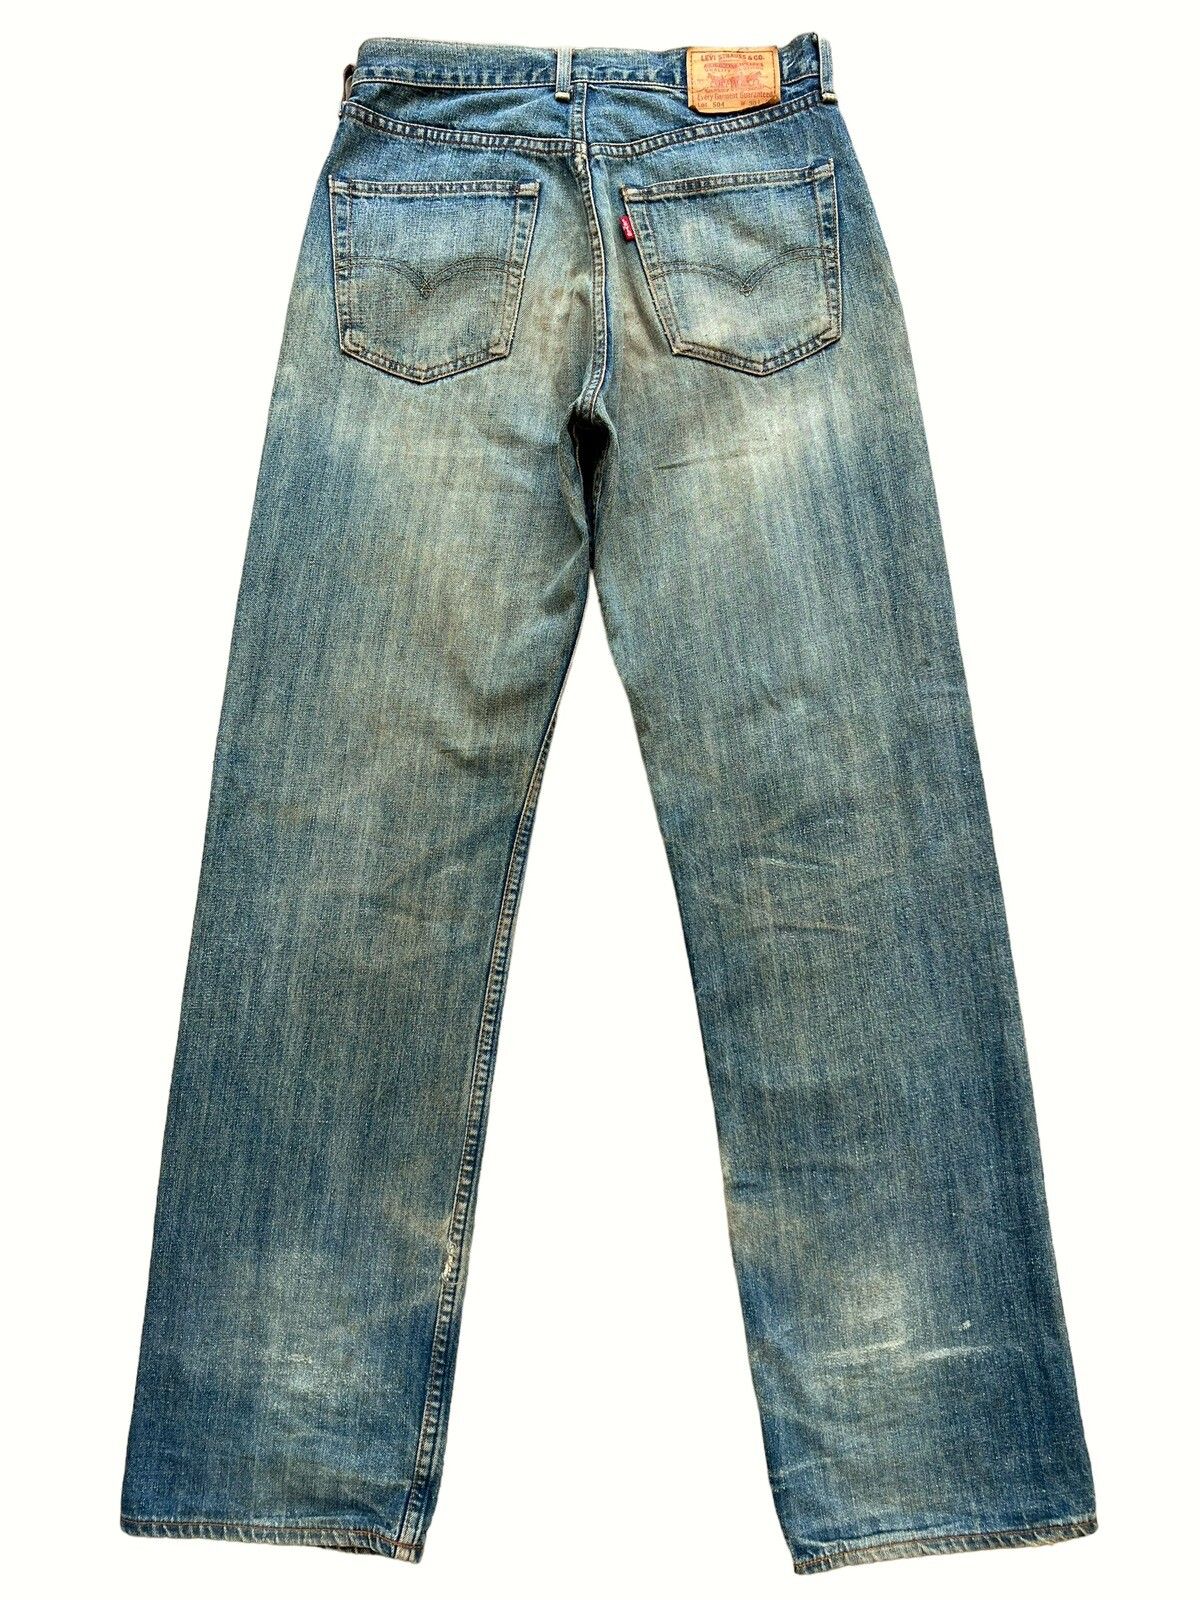 Vintage 90s Levis Distressed Mudwash Patch Denim Jeans 30x35 - 2